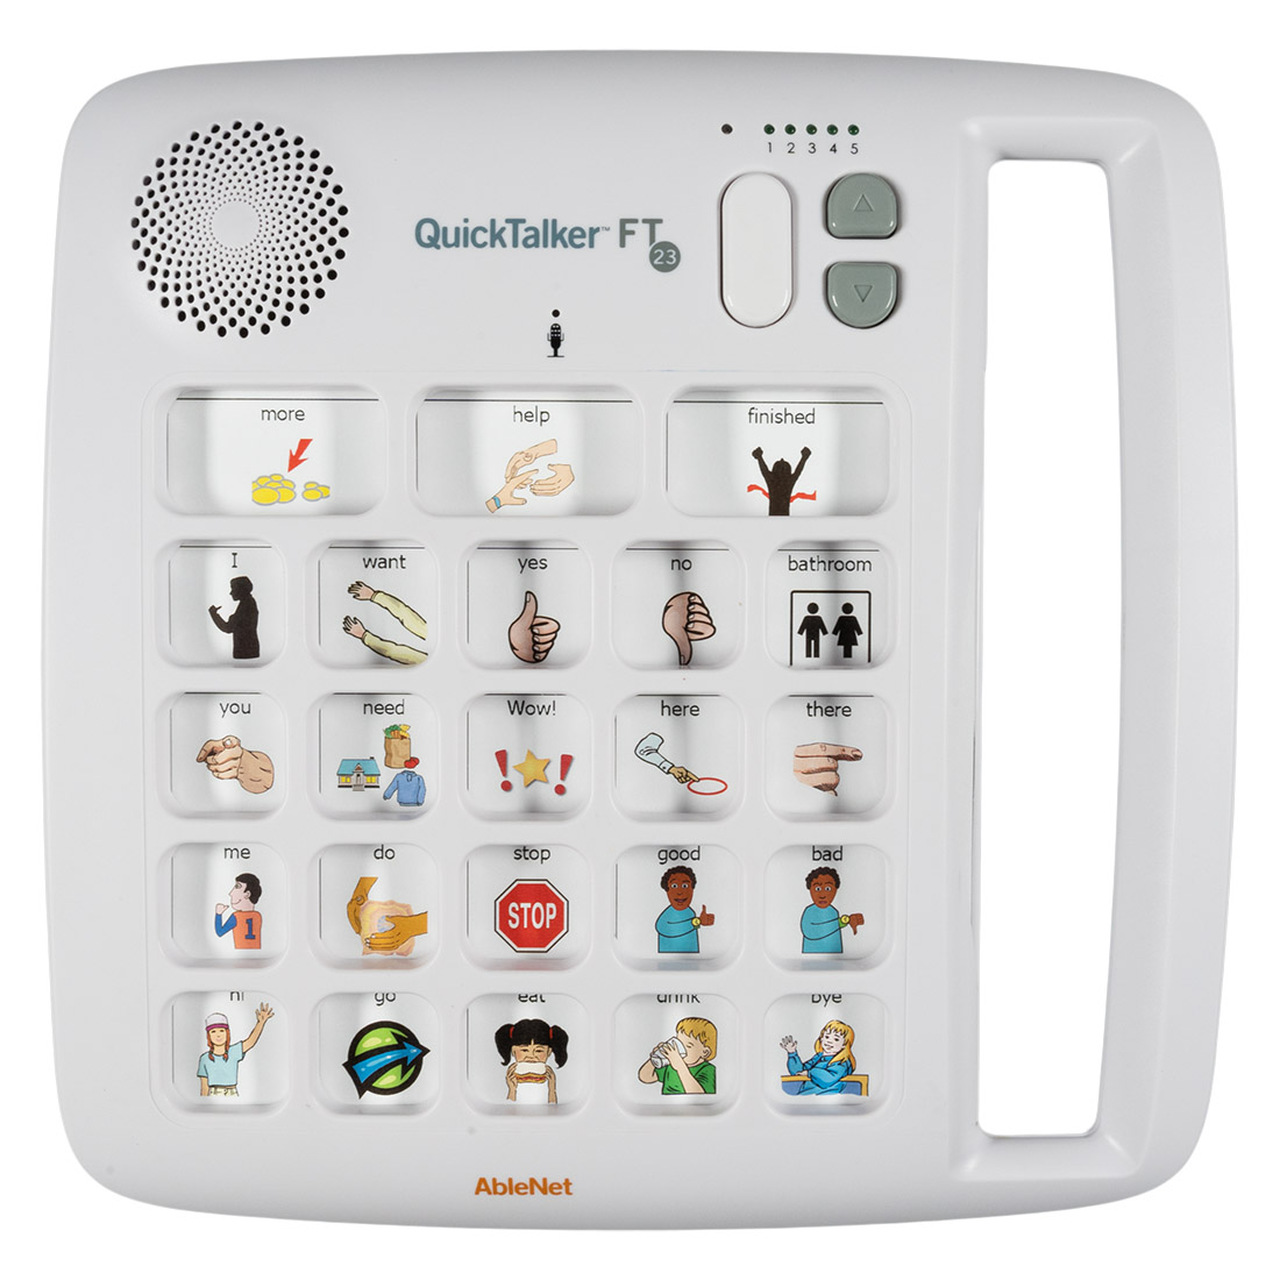 Vocalizador Quicktalker FT23 generador de voz de comunicacion aumentativa y alternativa gotalk